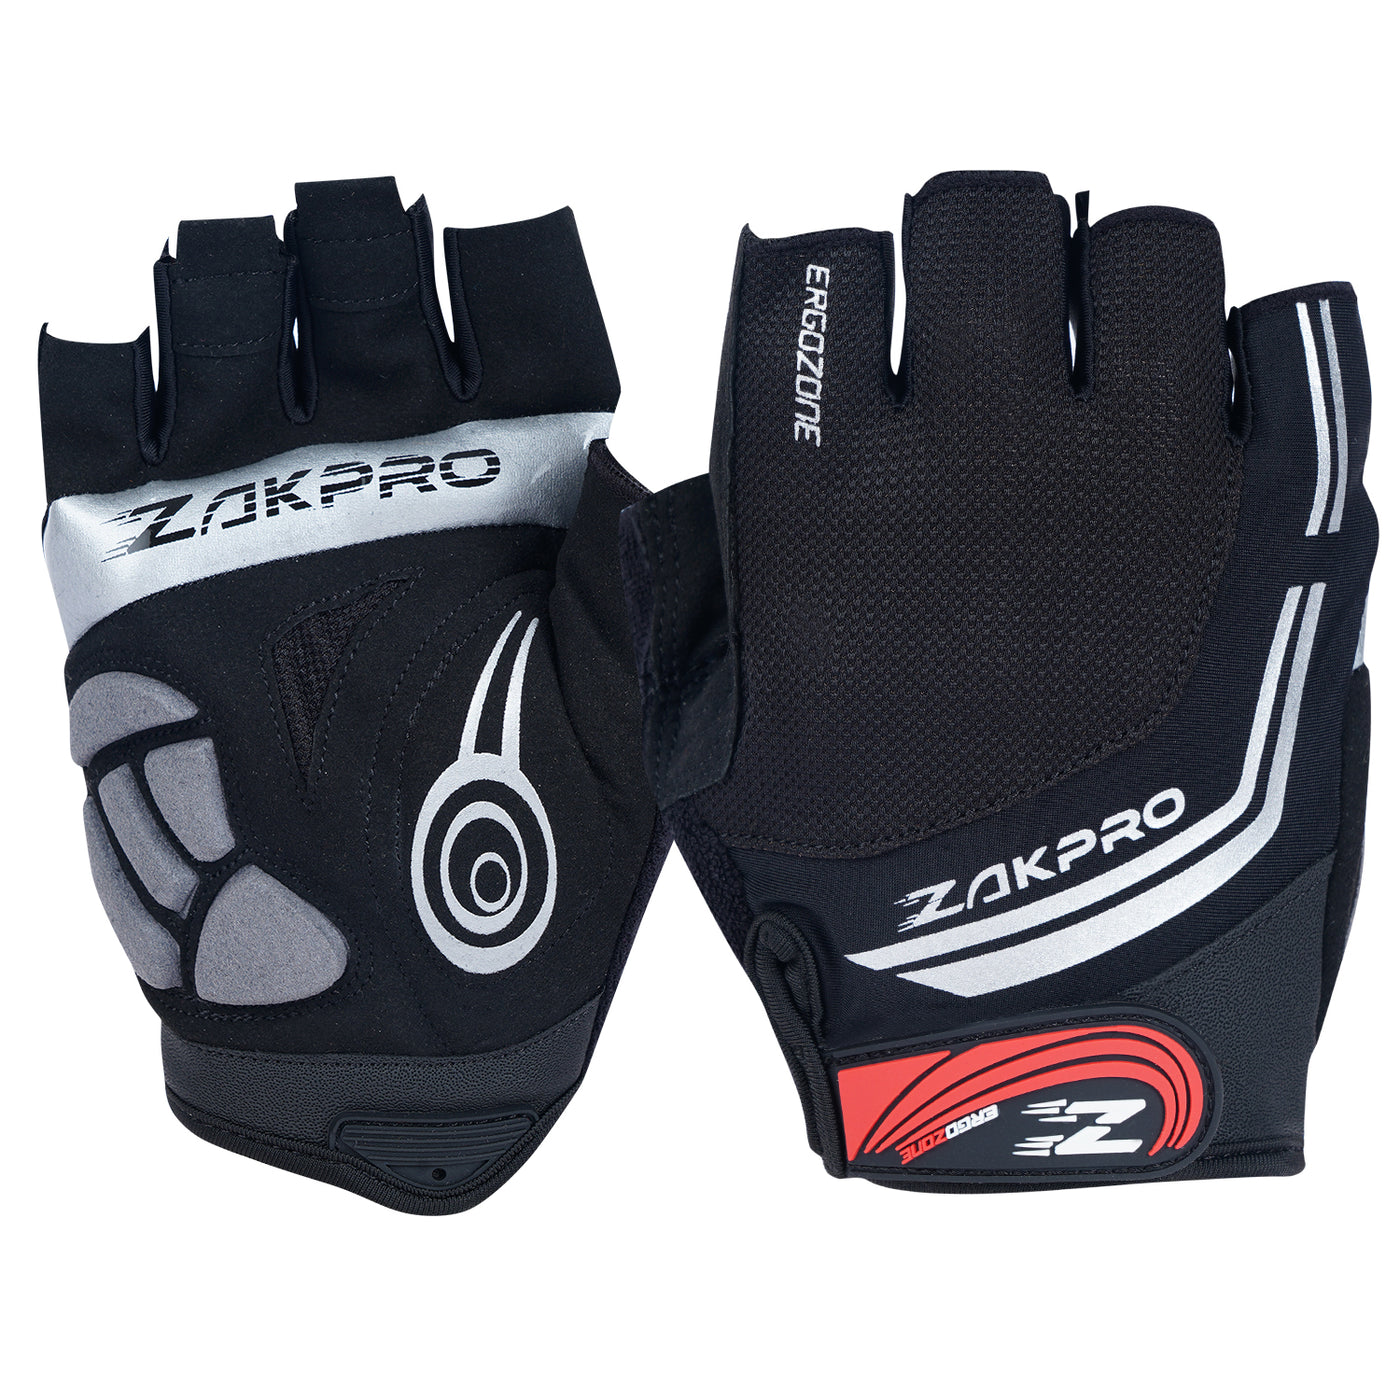 Zakpro Hybrid Mens Cycling Gloves (Black)